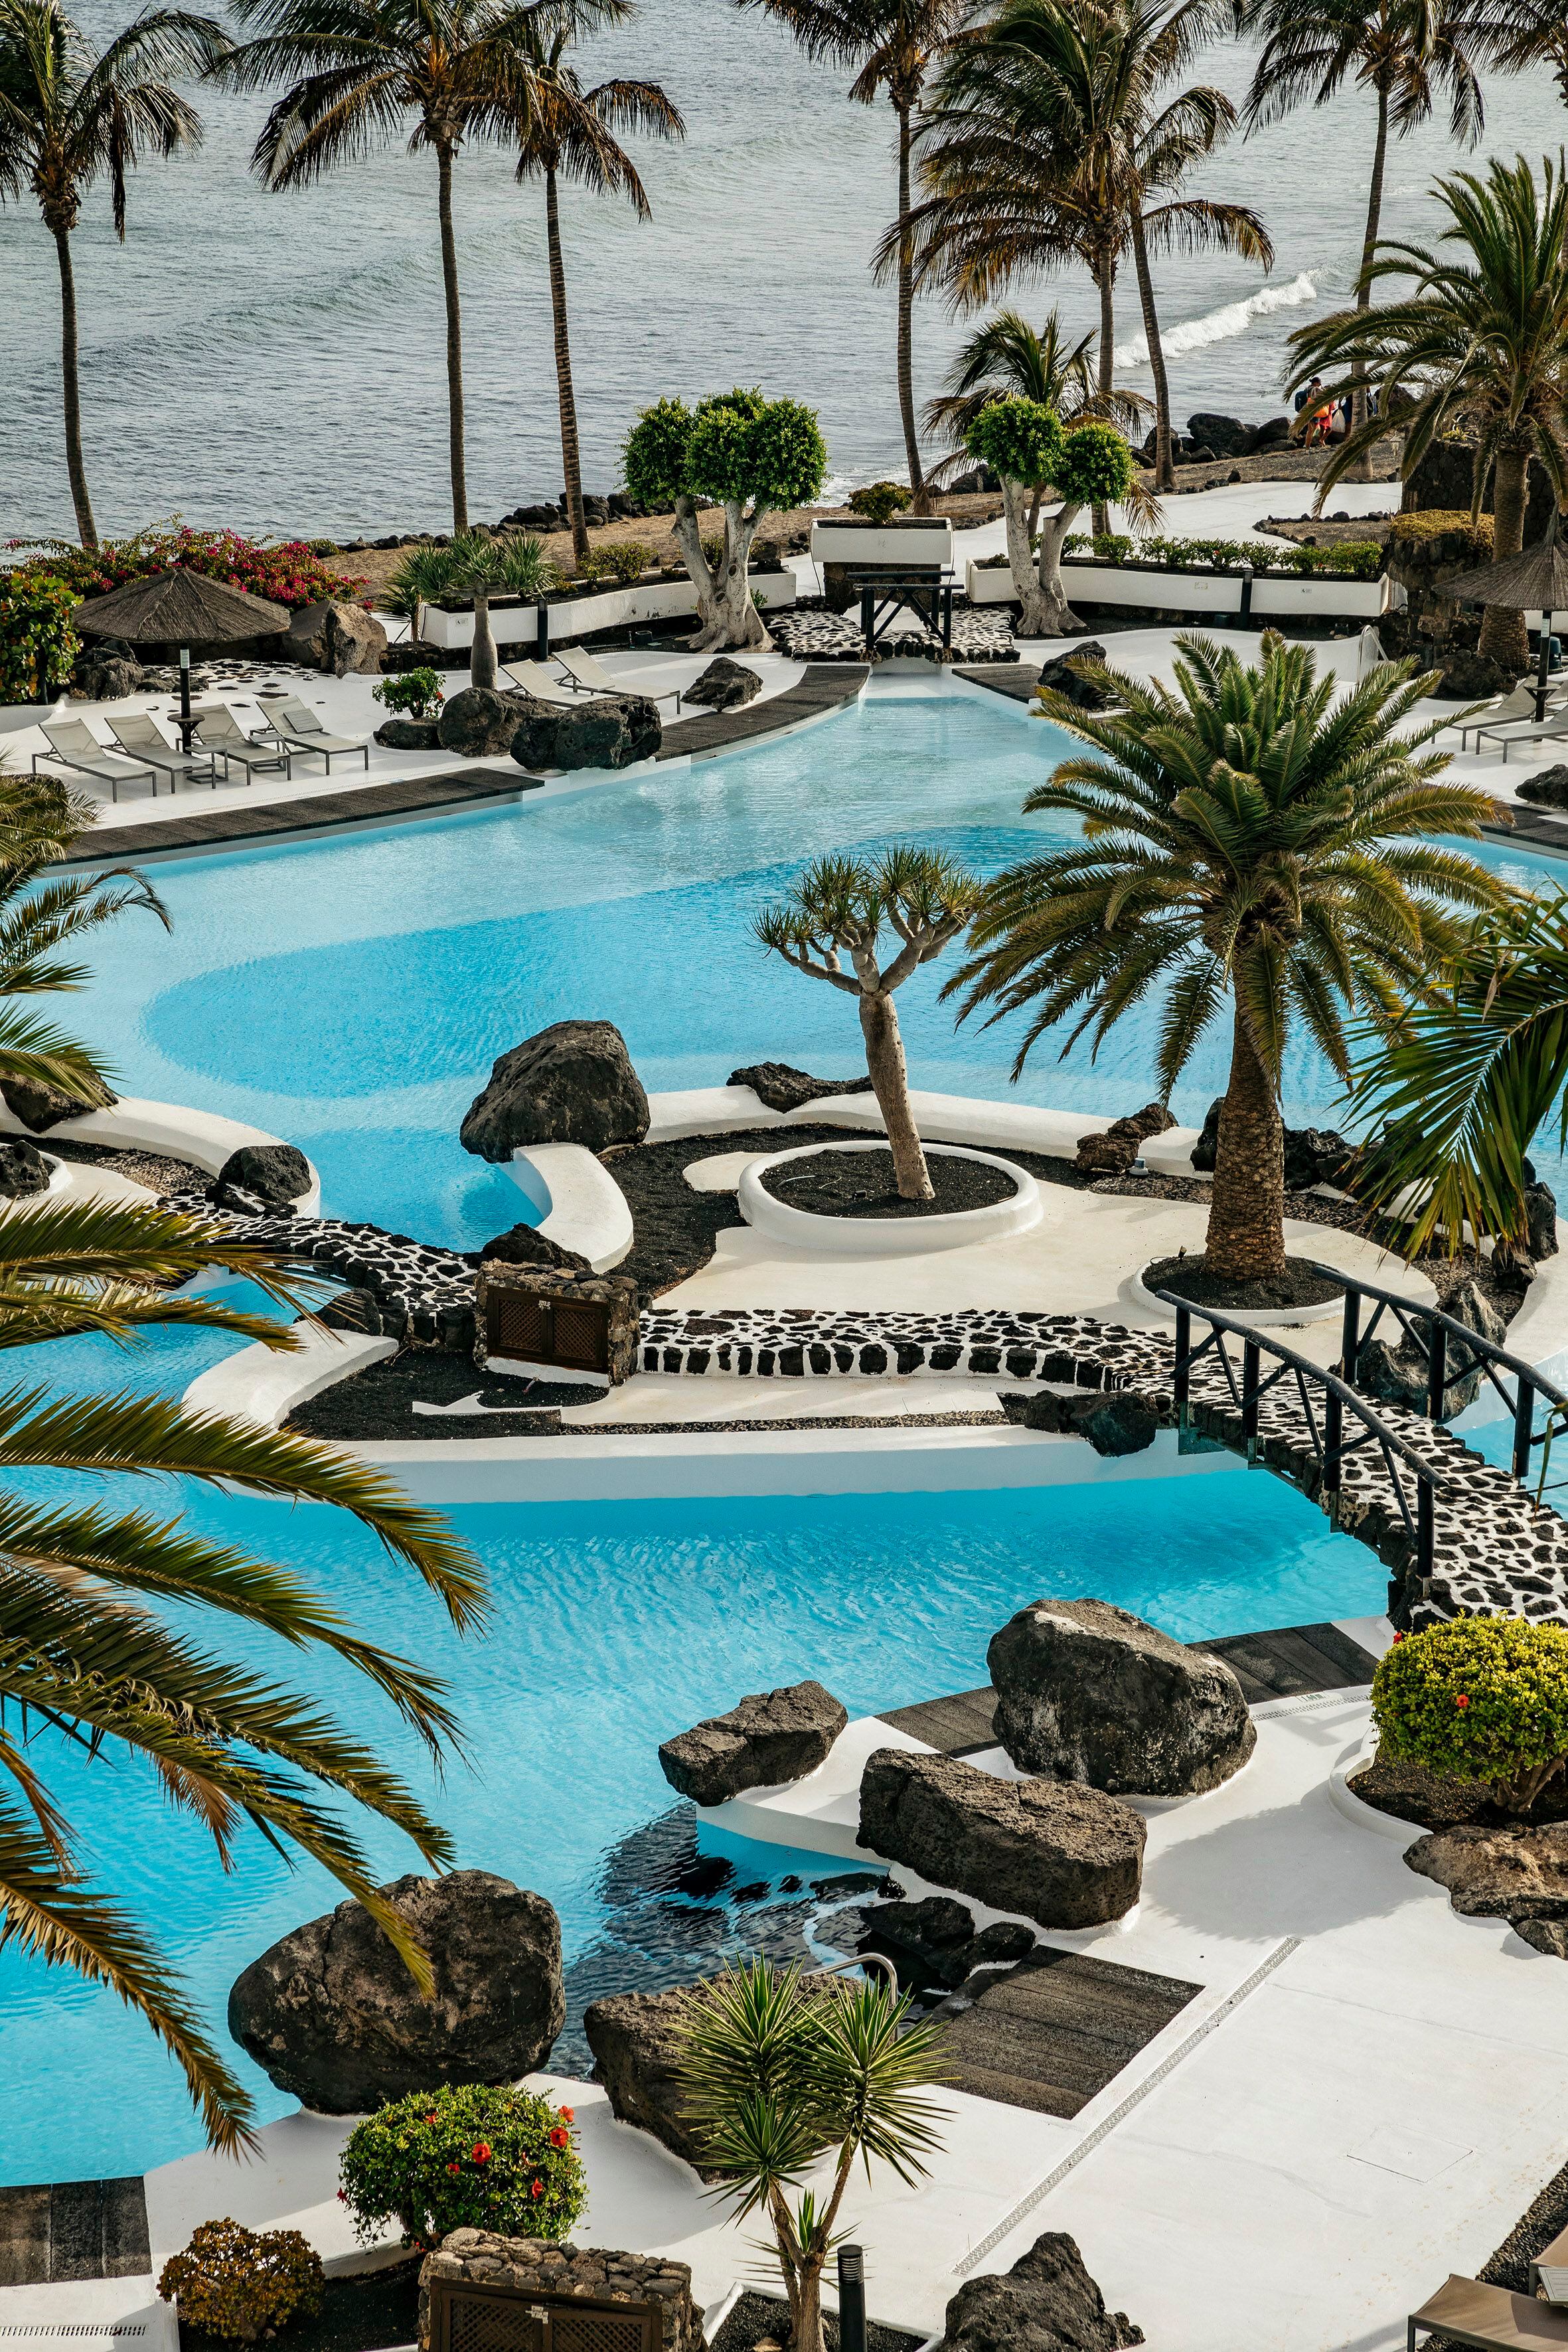 Detalle de la piscina de Manrique en el hotel Paradisus by Meliá, que fue restaurado por última vez el año pasado.